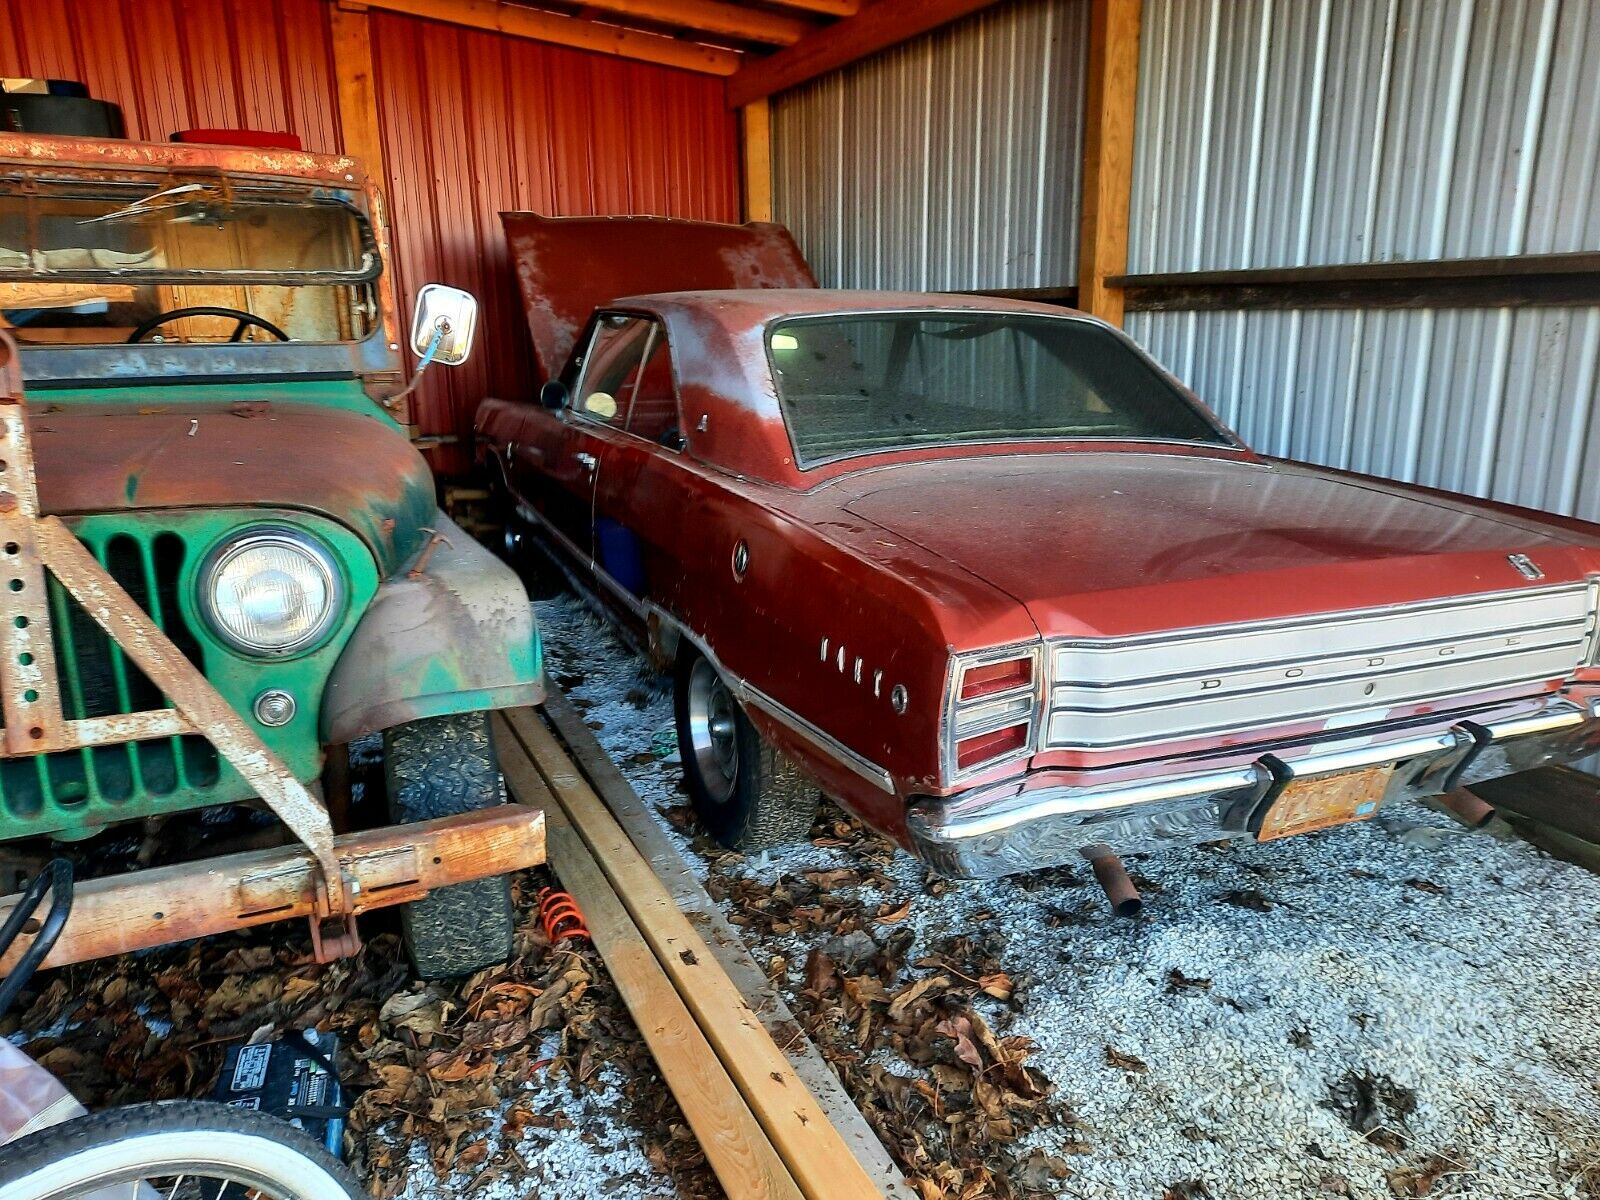 1968 Dodge Dart Gt Barn Find Flexes Original Everything In Unrestored Condition Autoevolution